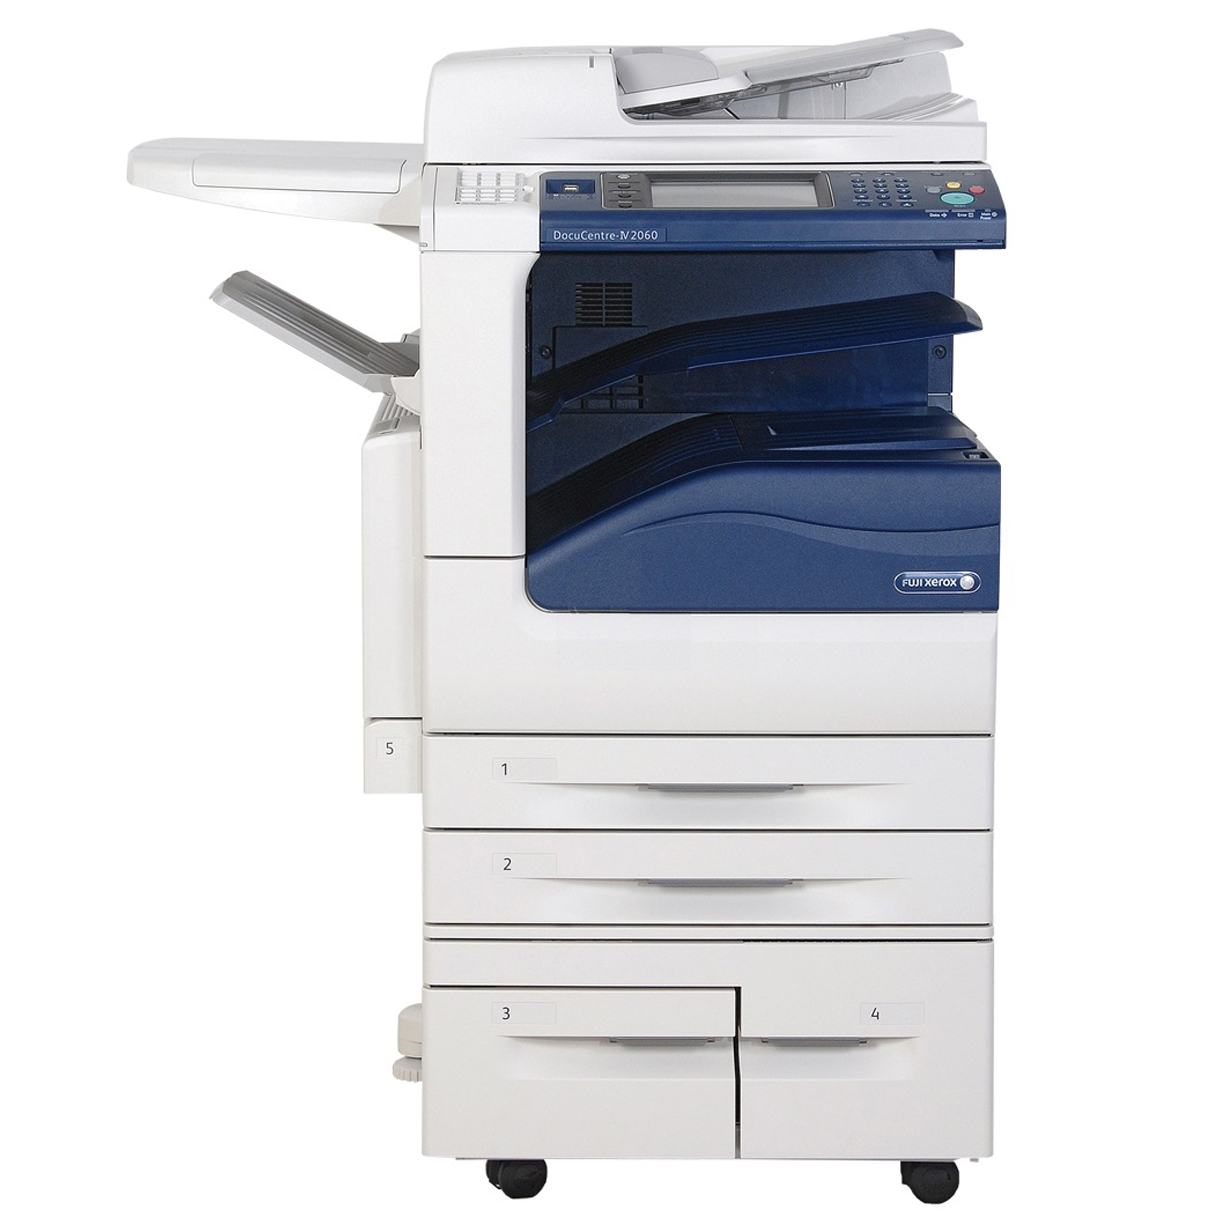 Dịch vụ cho thuê máy photocopy Fuji Xerox tại Hà Nội